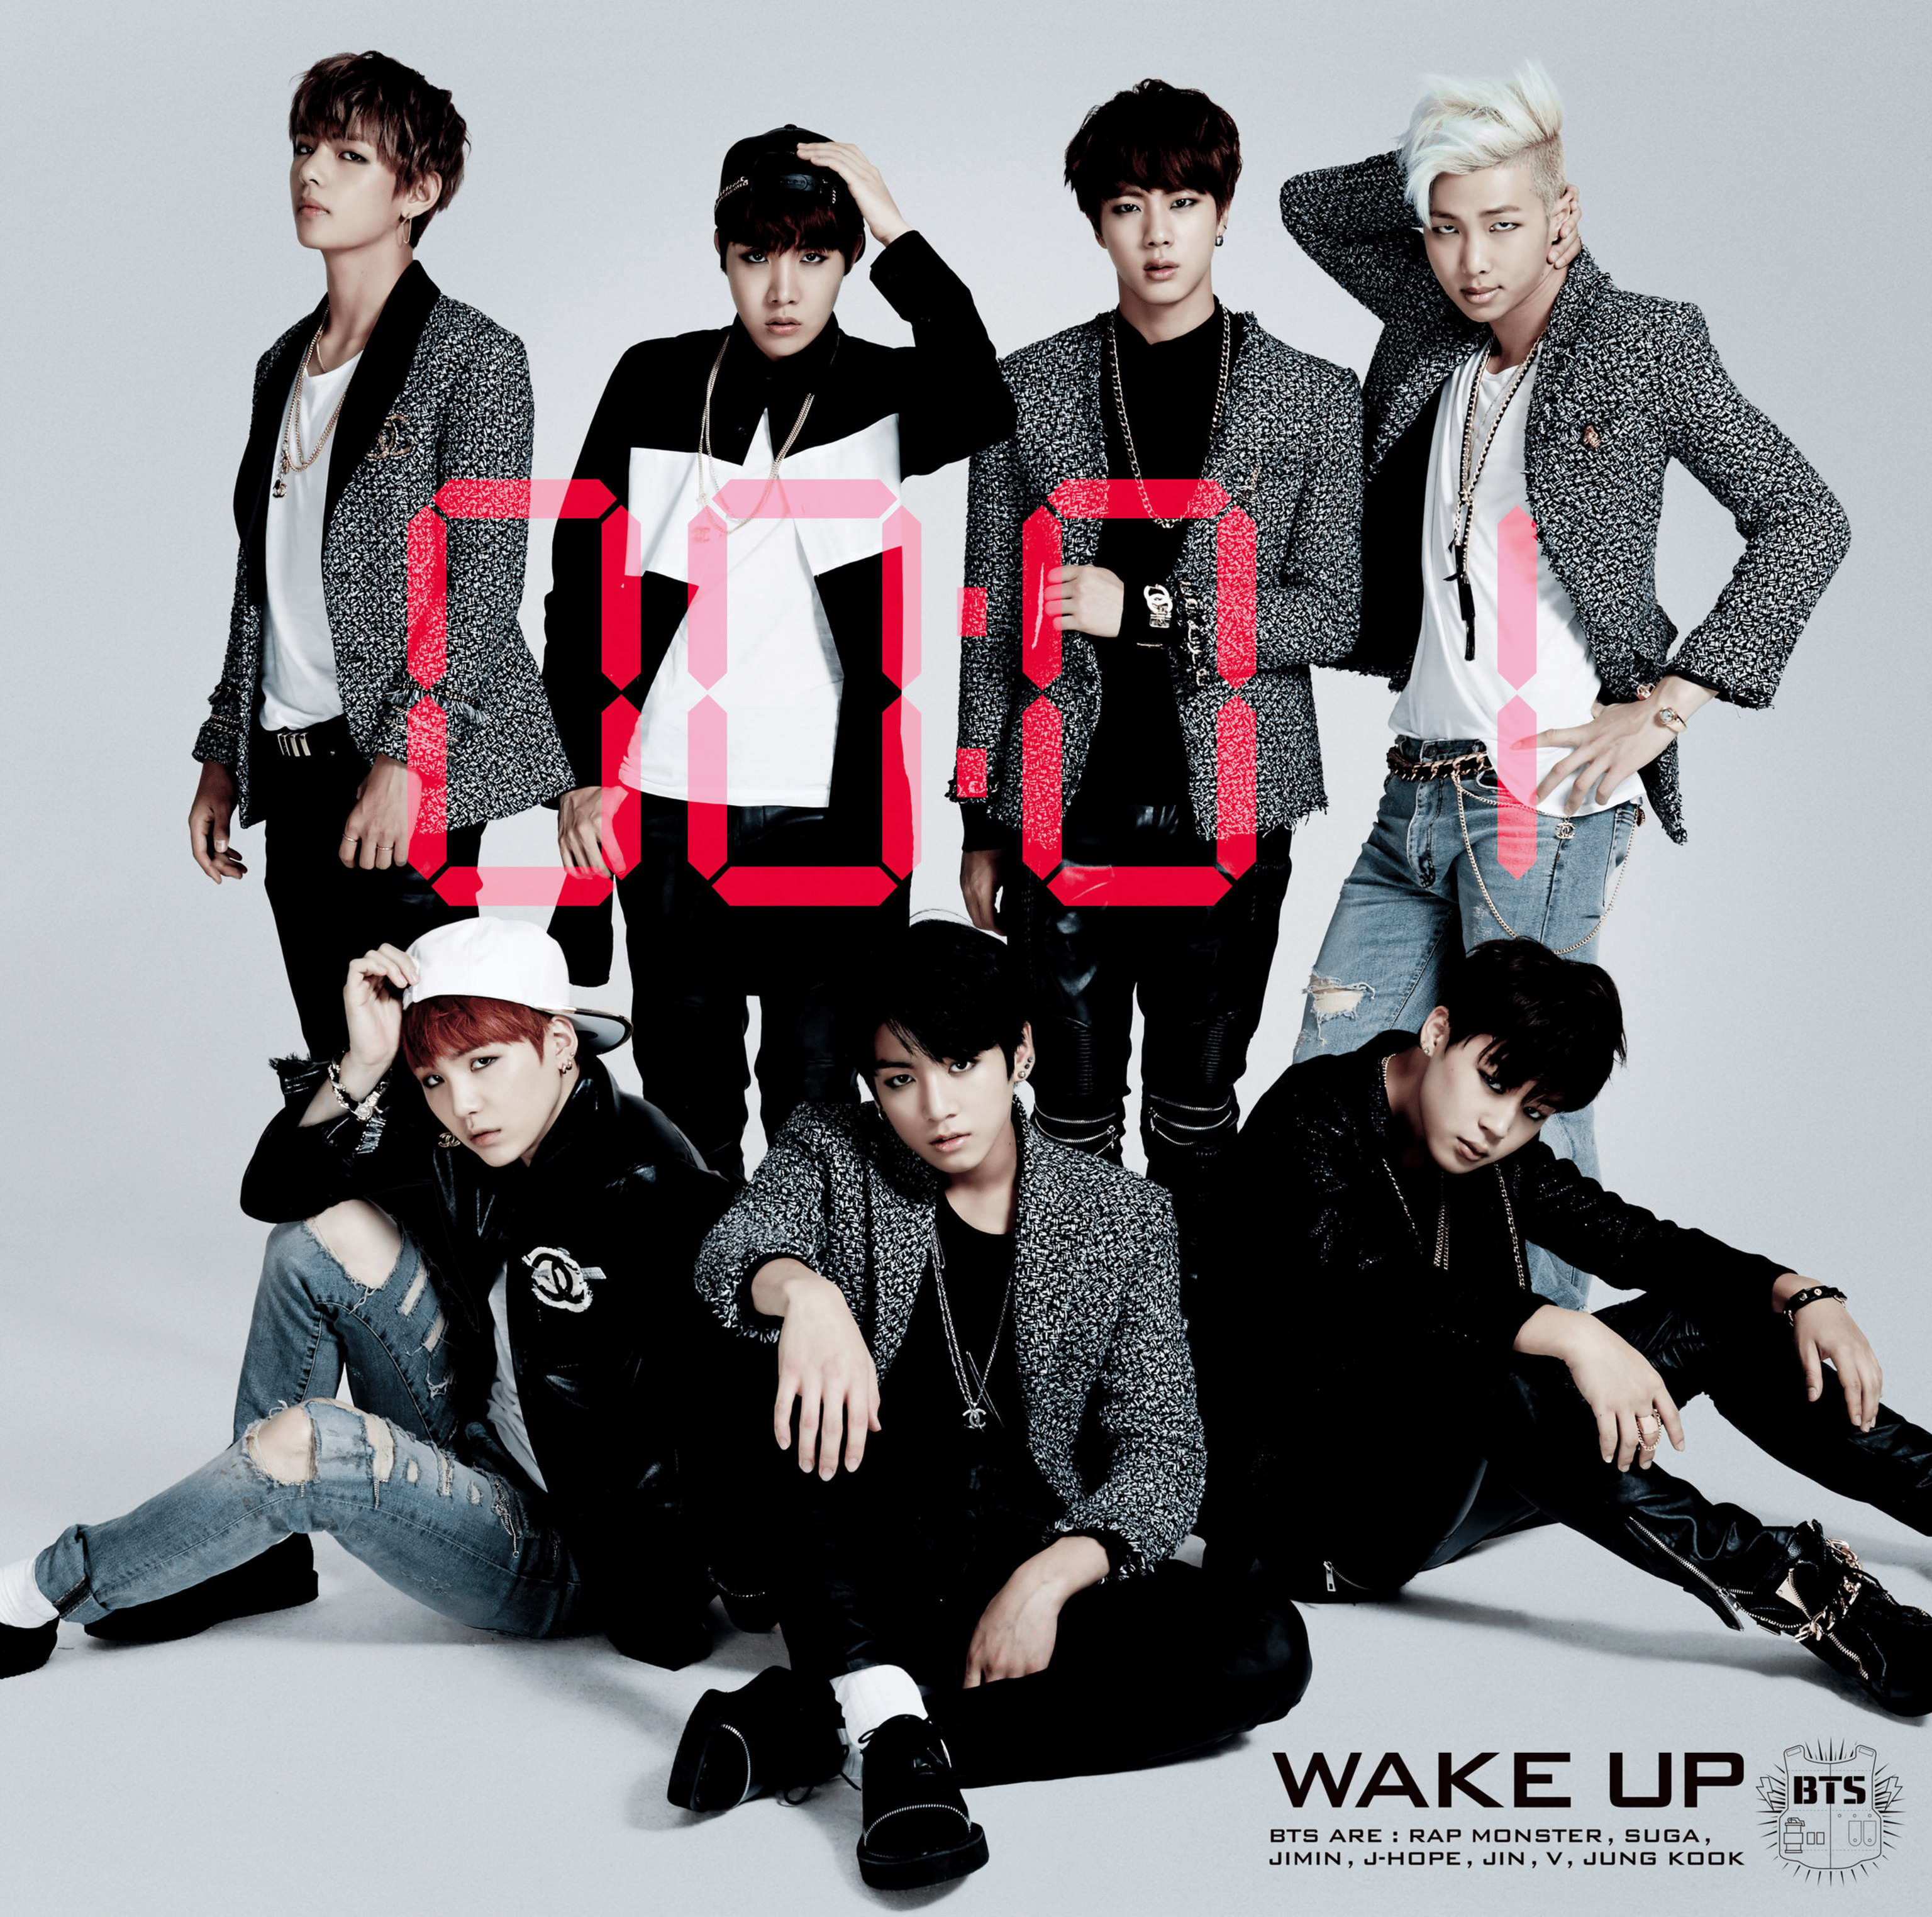 Hasil gambar untuk wake up bts album cover